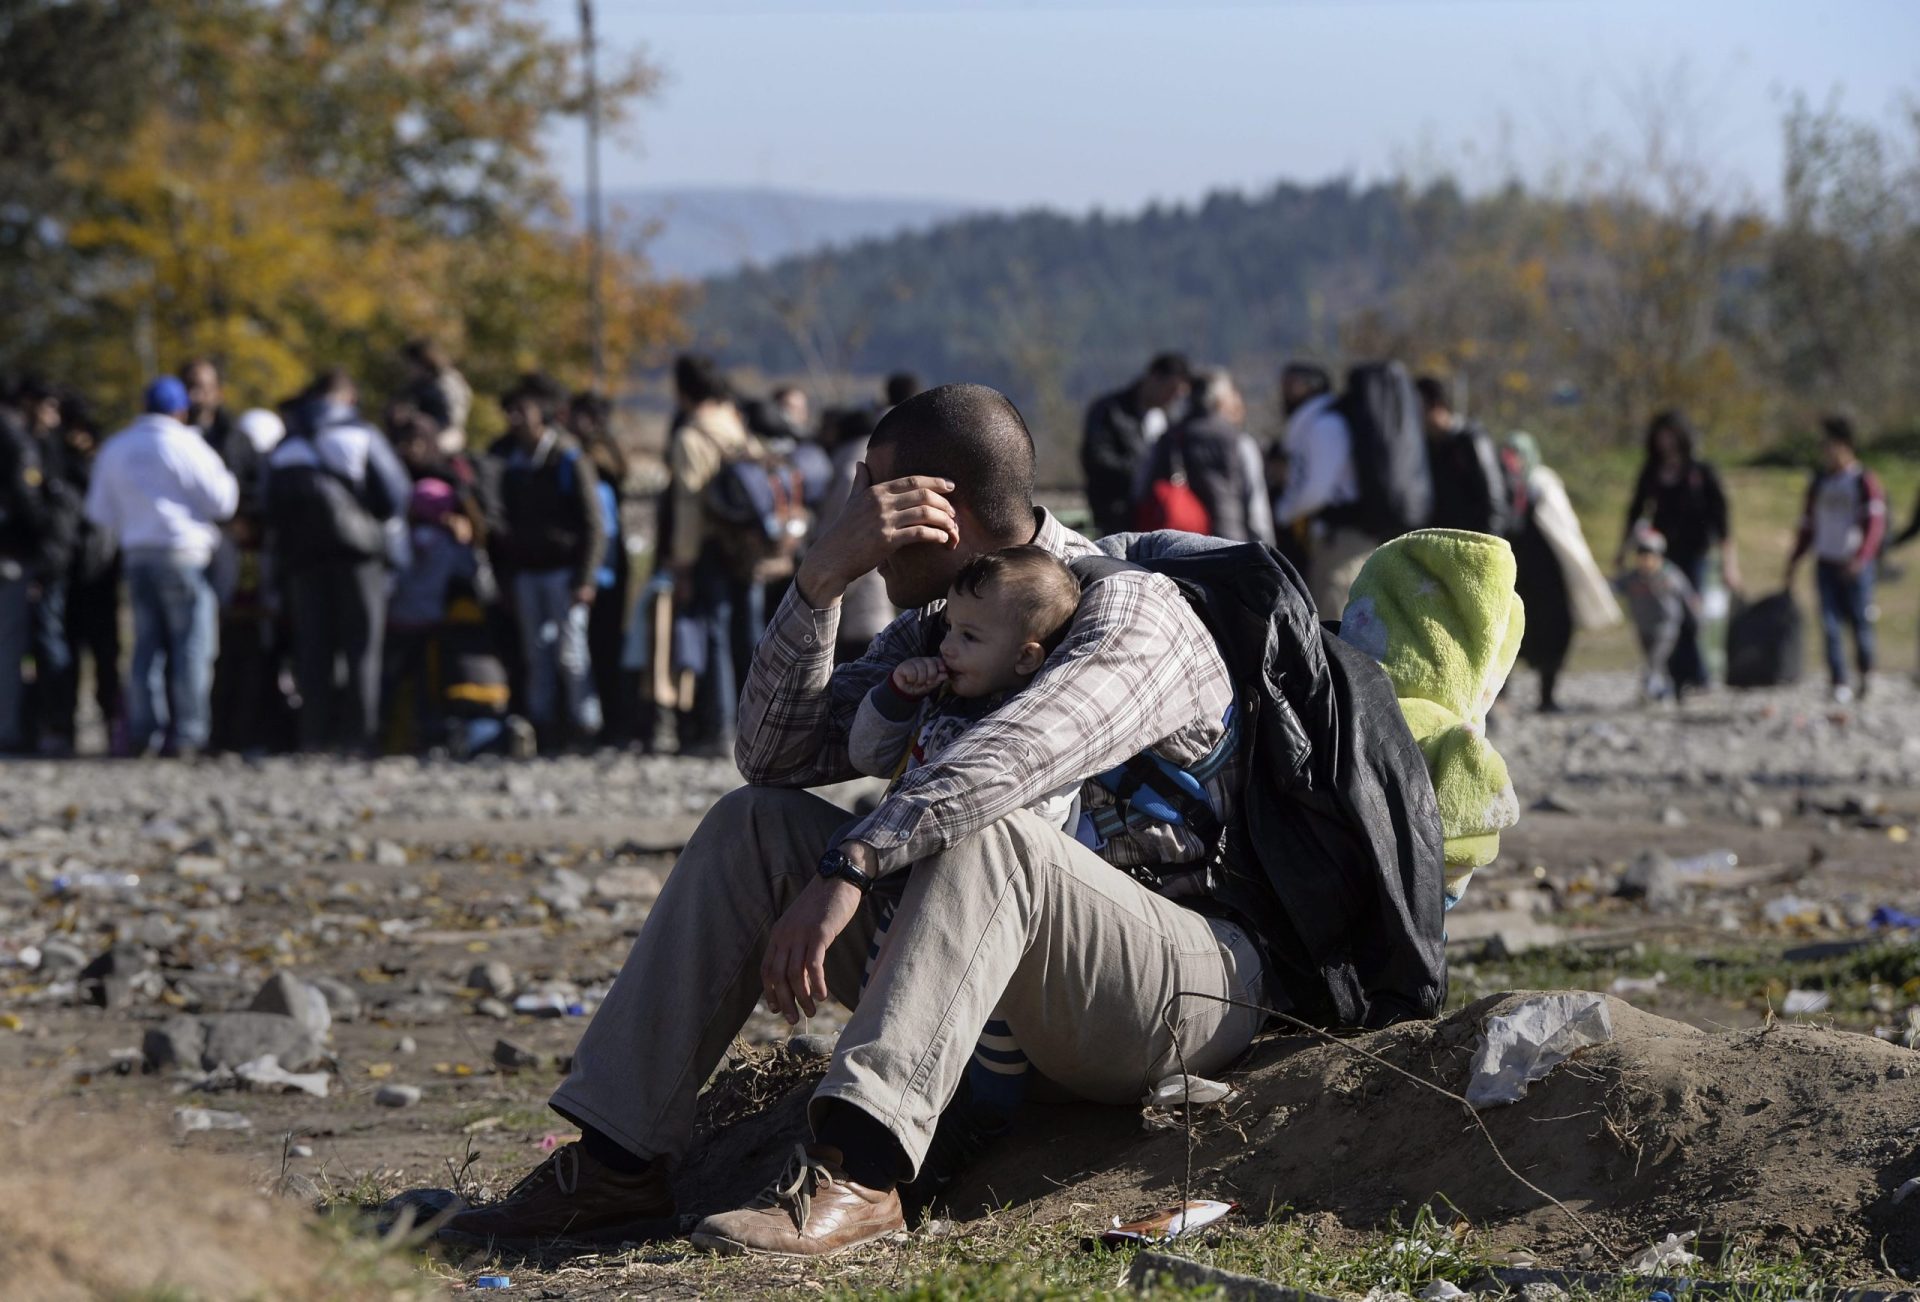 Migrantes. Oxfam acusa Bulgária de maus tratos